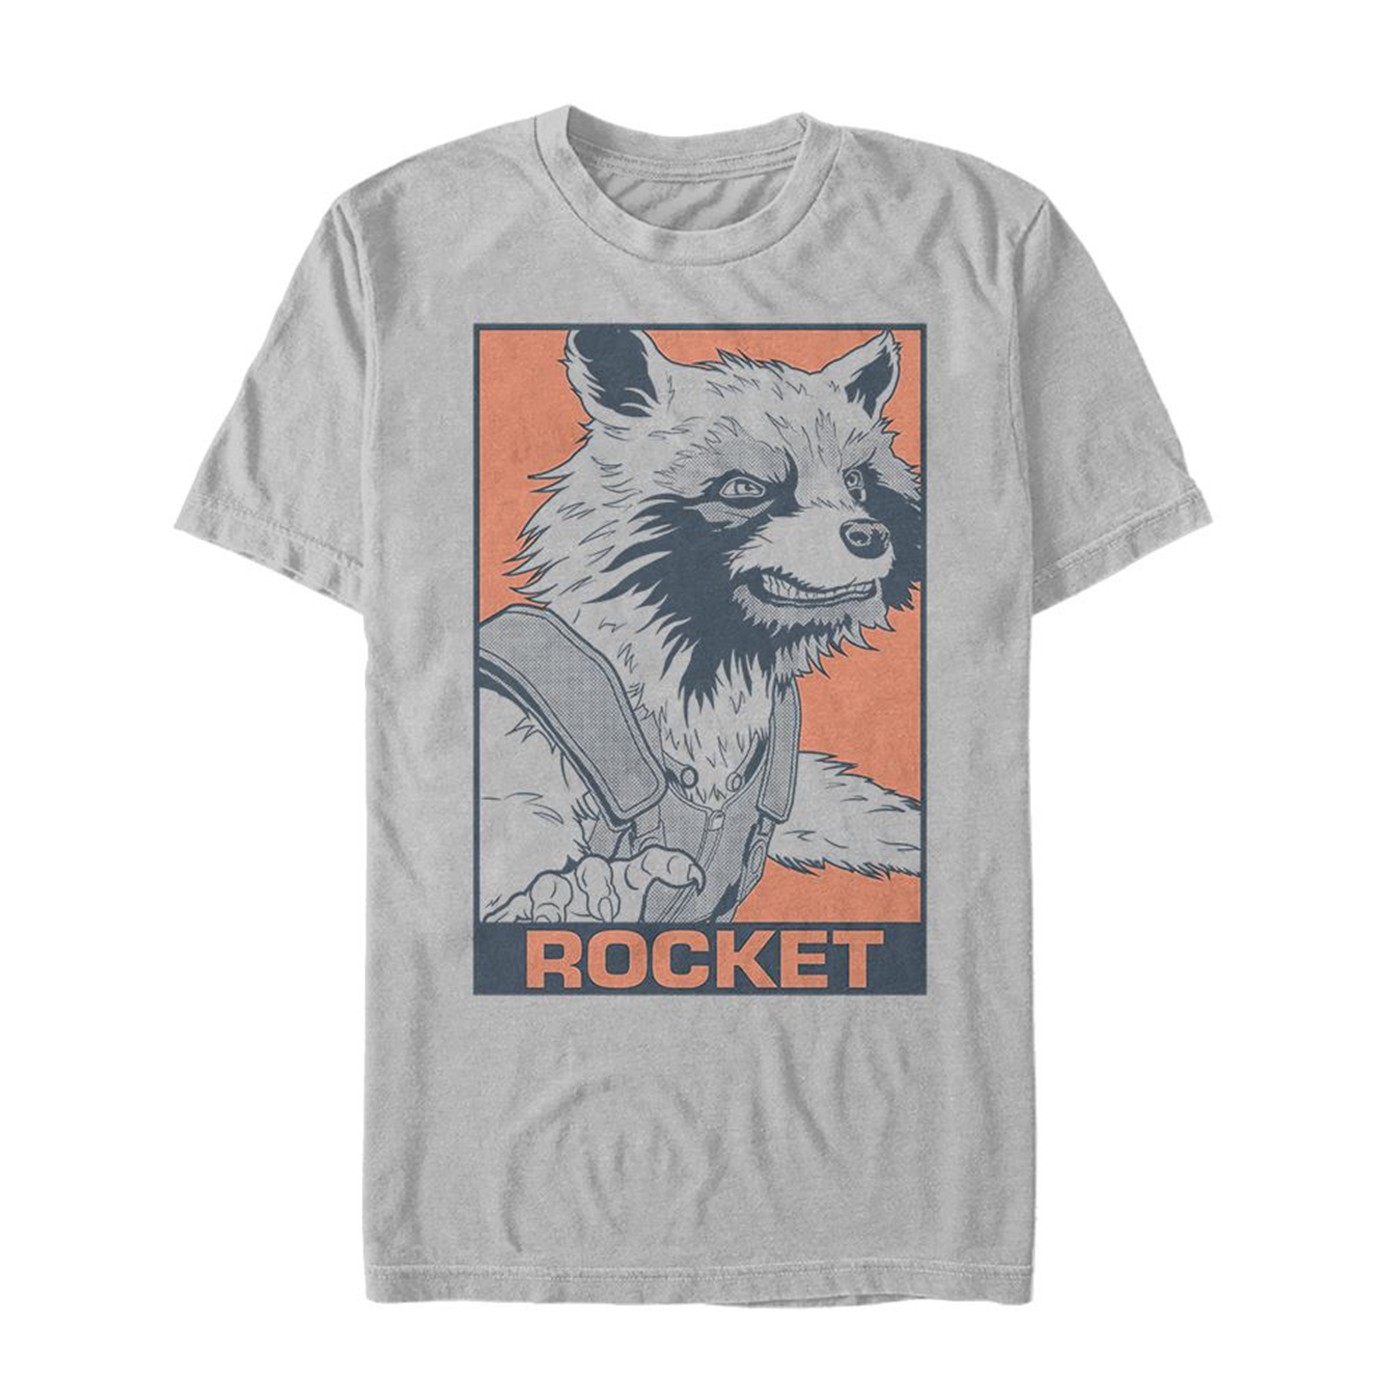 Avengers Endgame Rocket Color Pop Men's T-Shirt